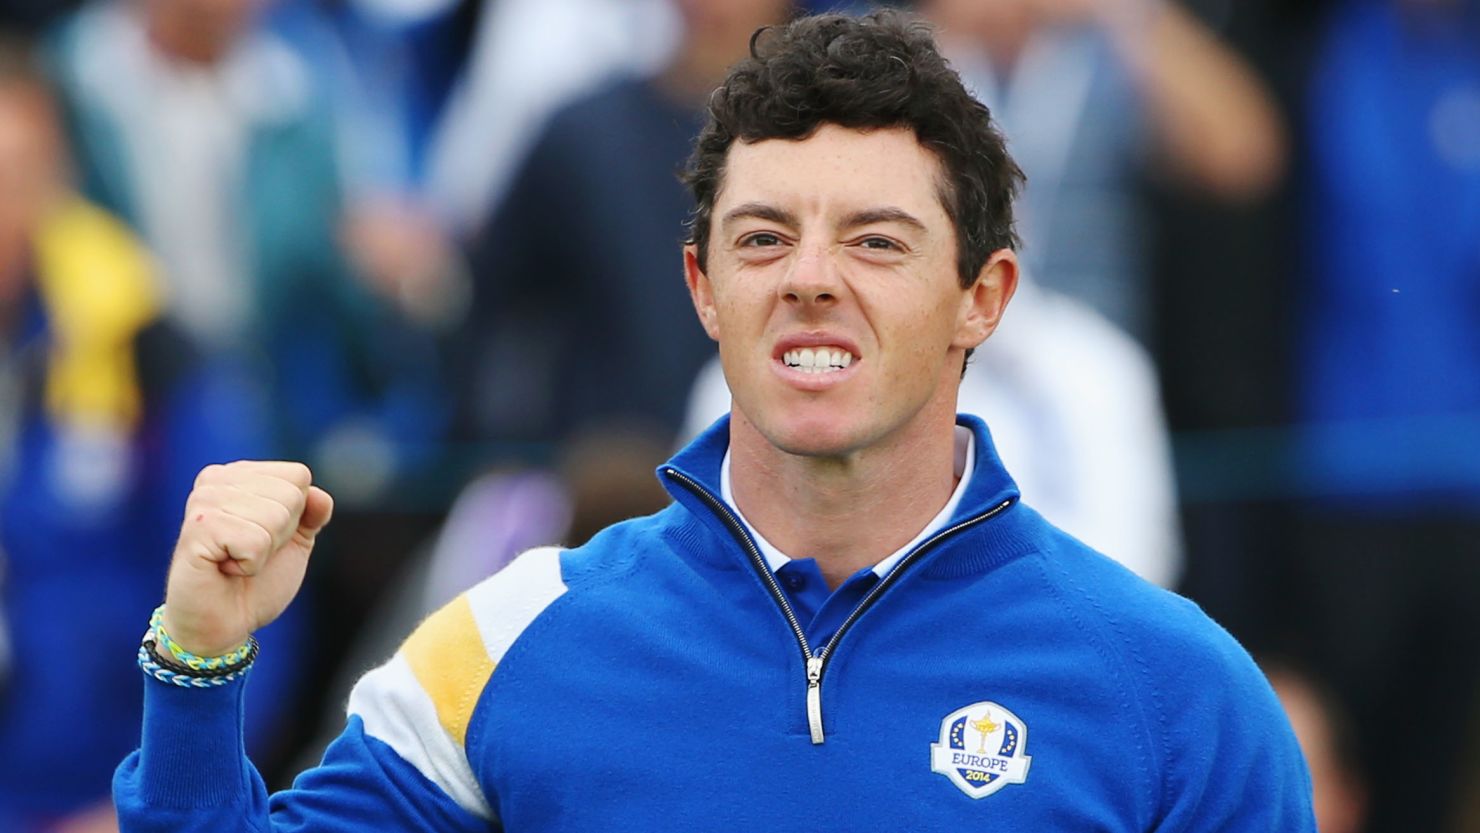 Rory McIlroy has enjoyed a triumphant season on both the European and PGA Tours.